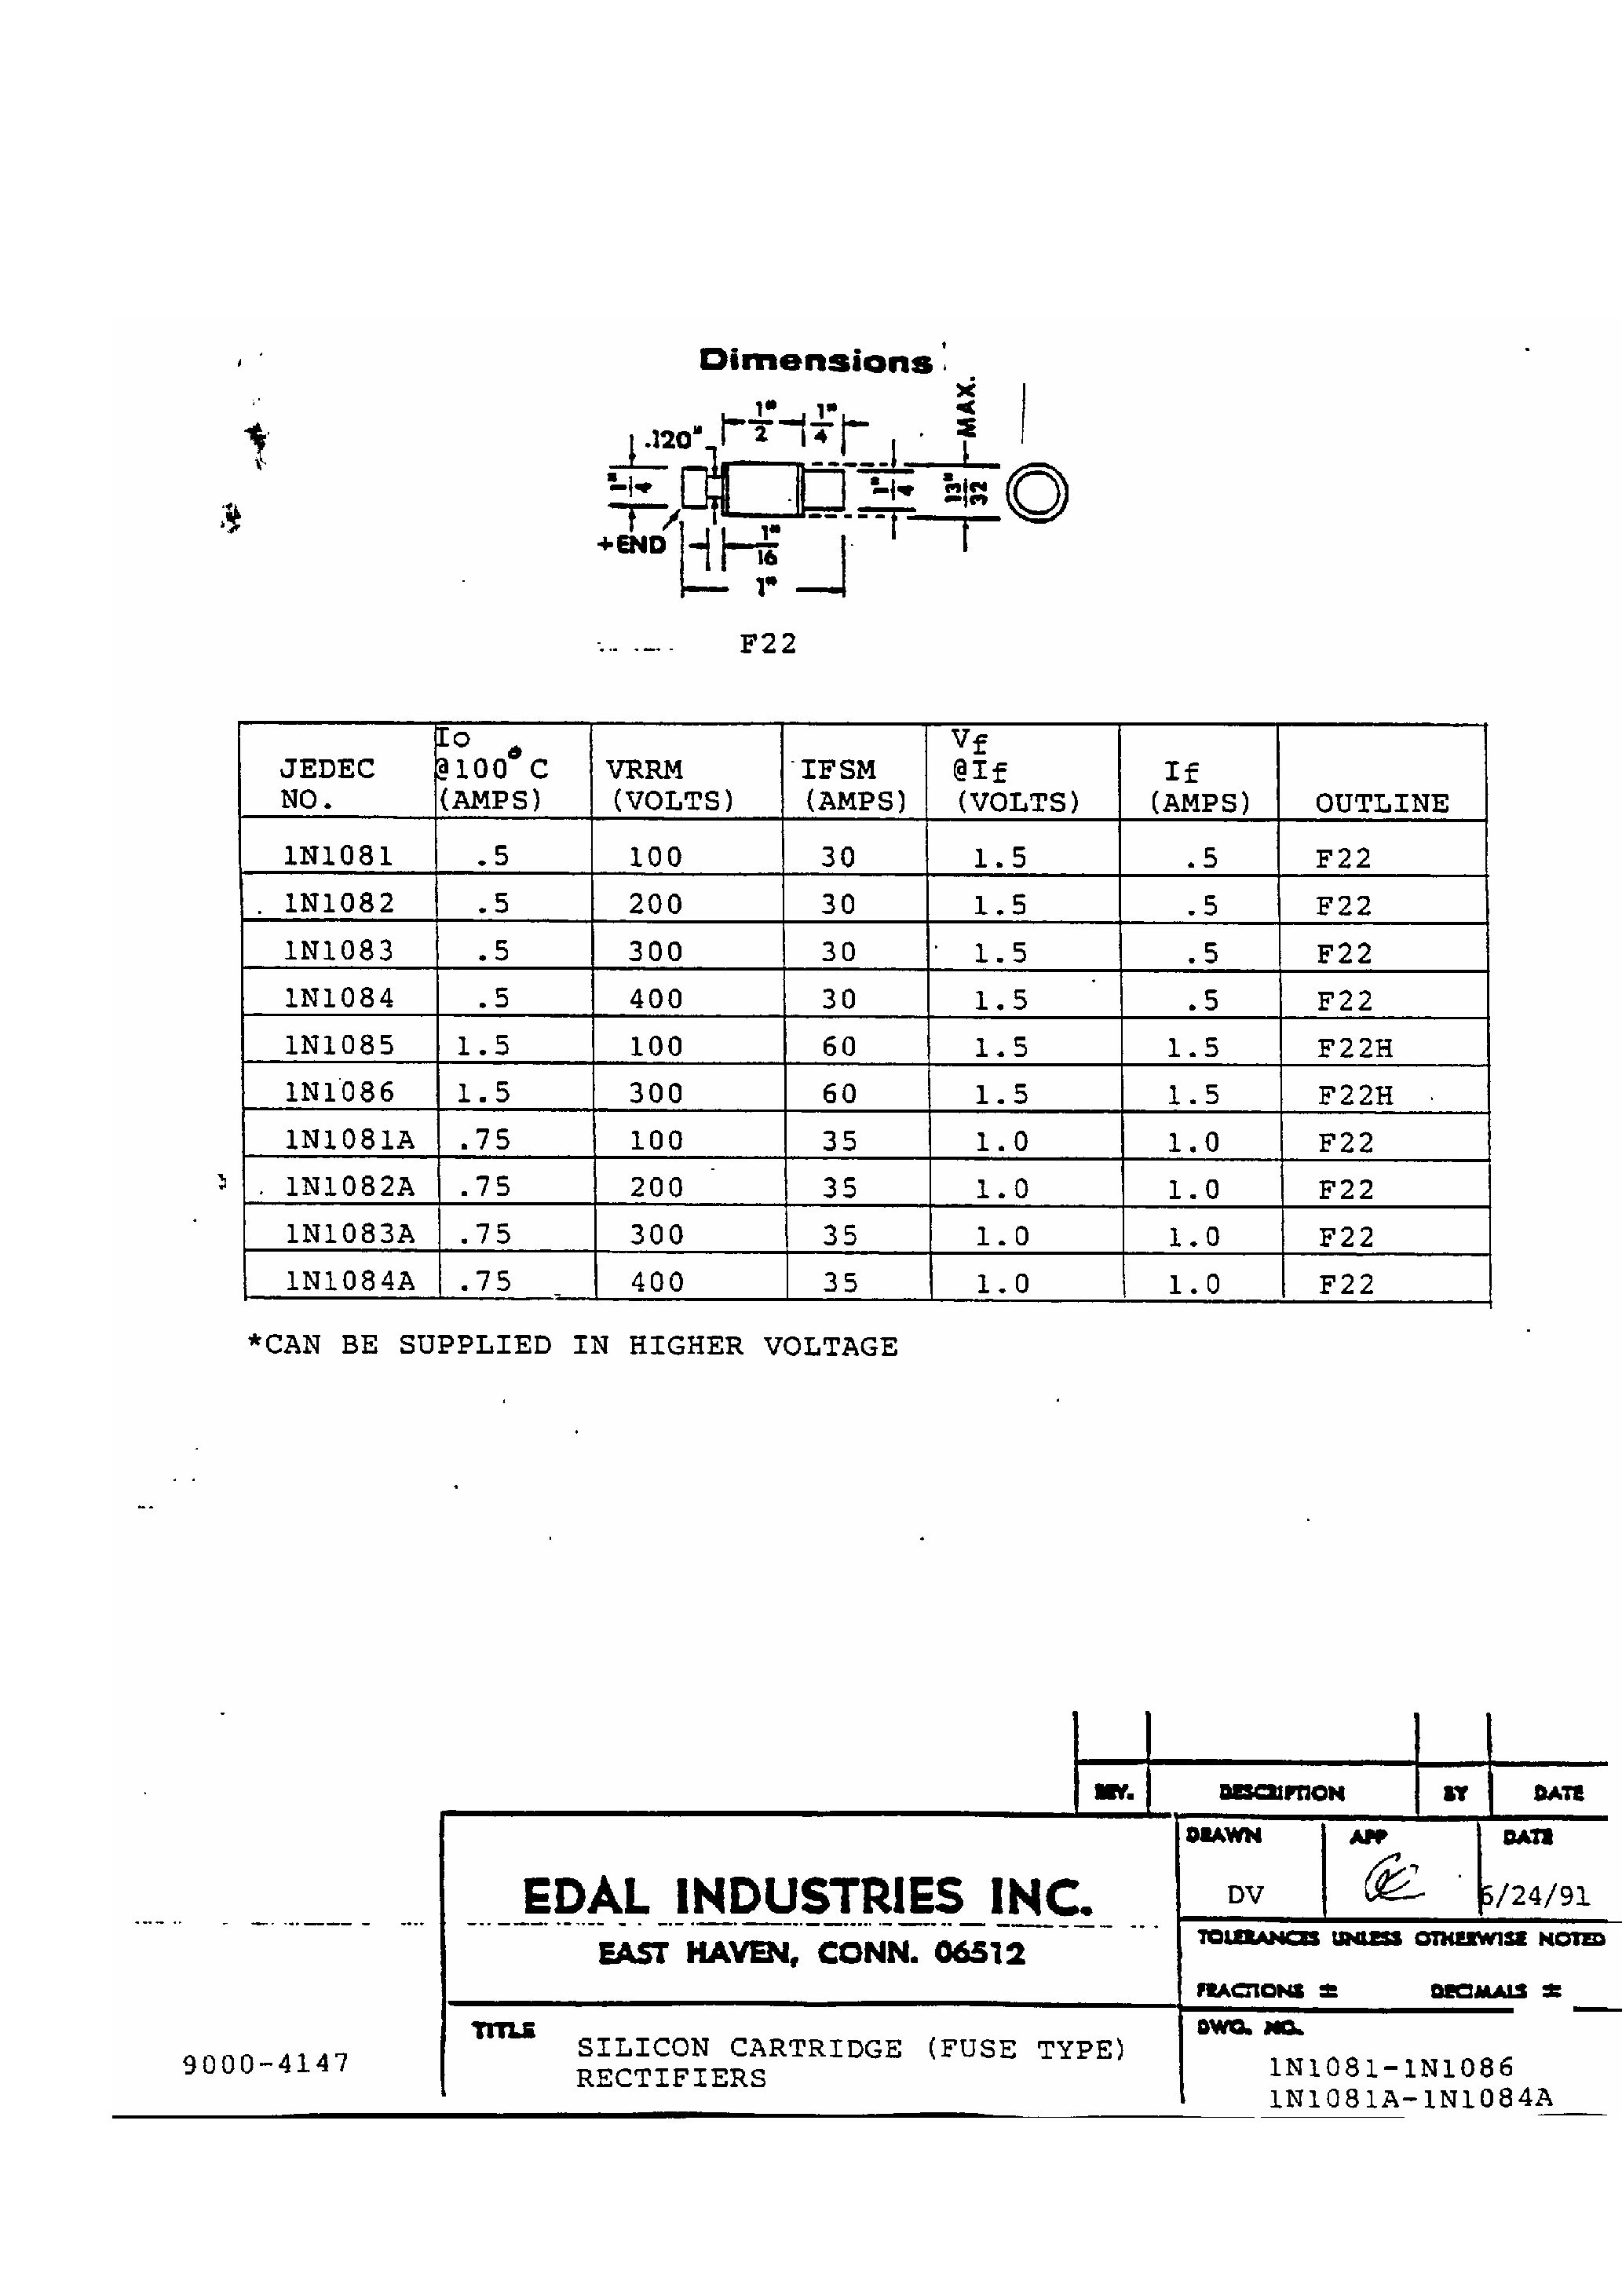 Datasheet 1N1084 - Silicon Cartridge page 1